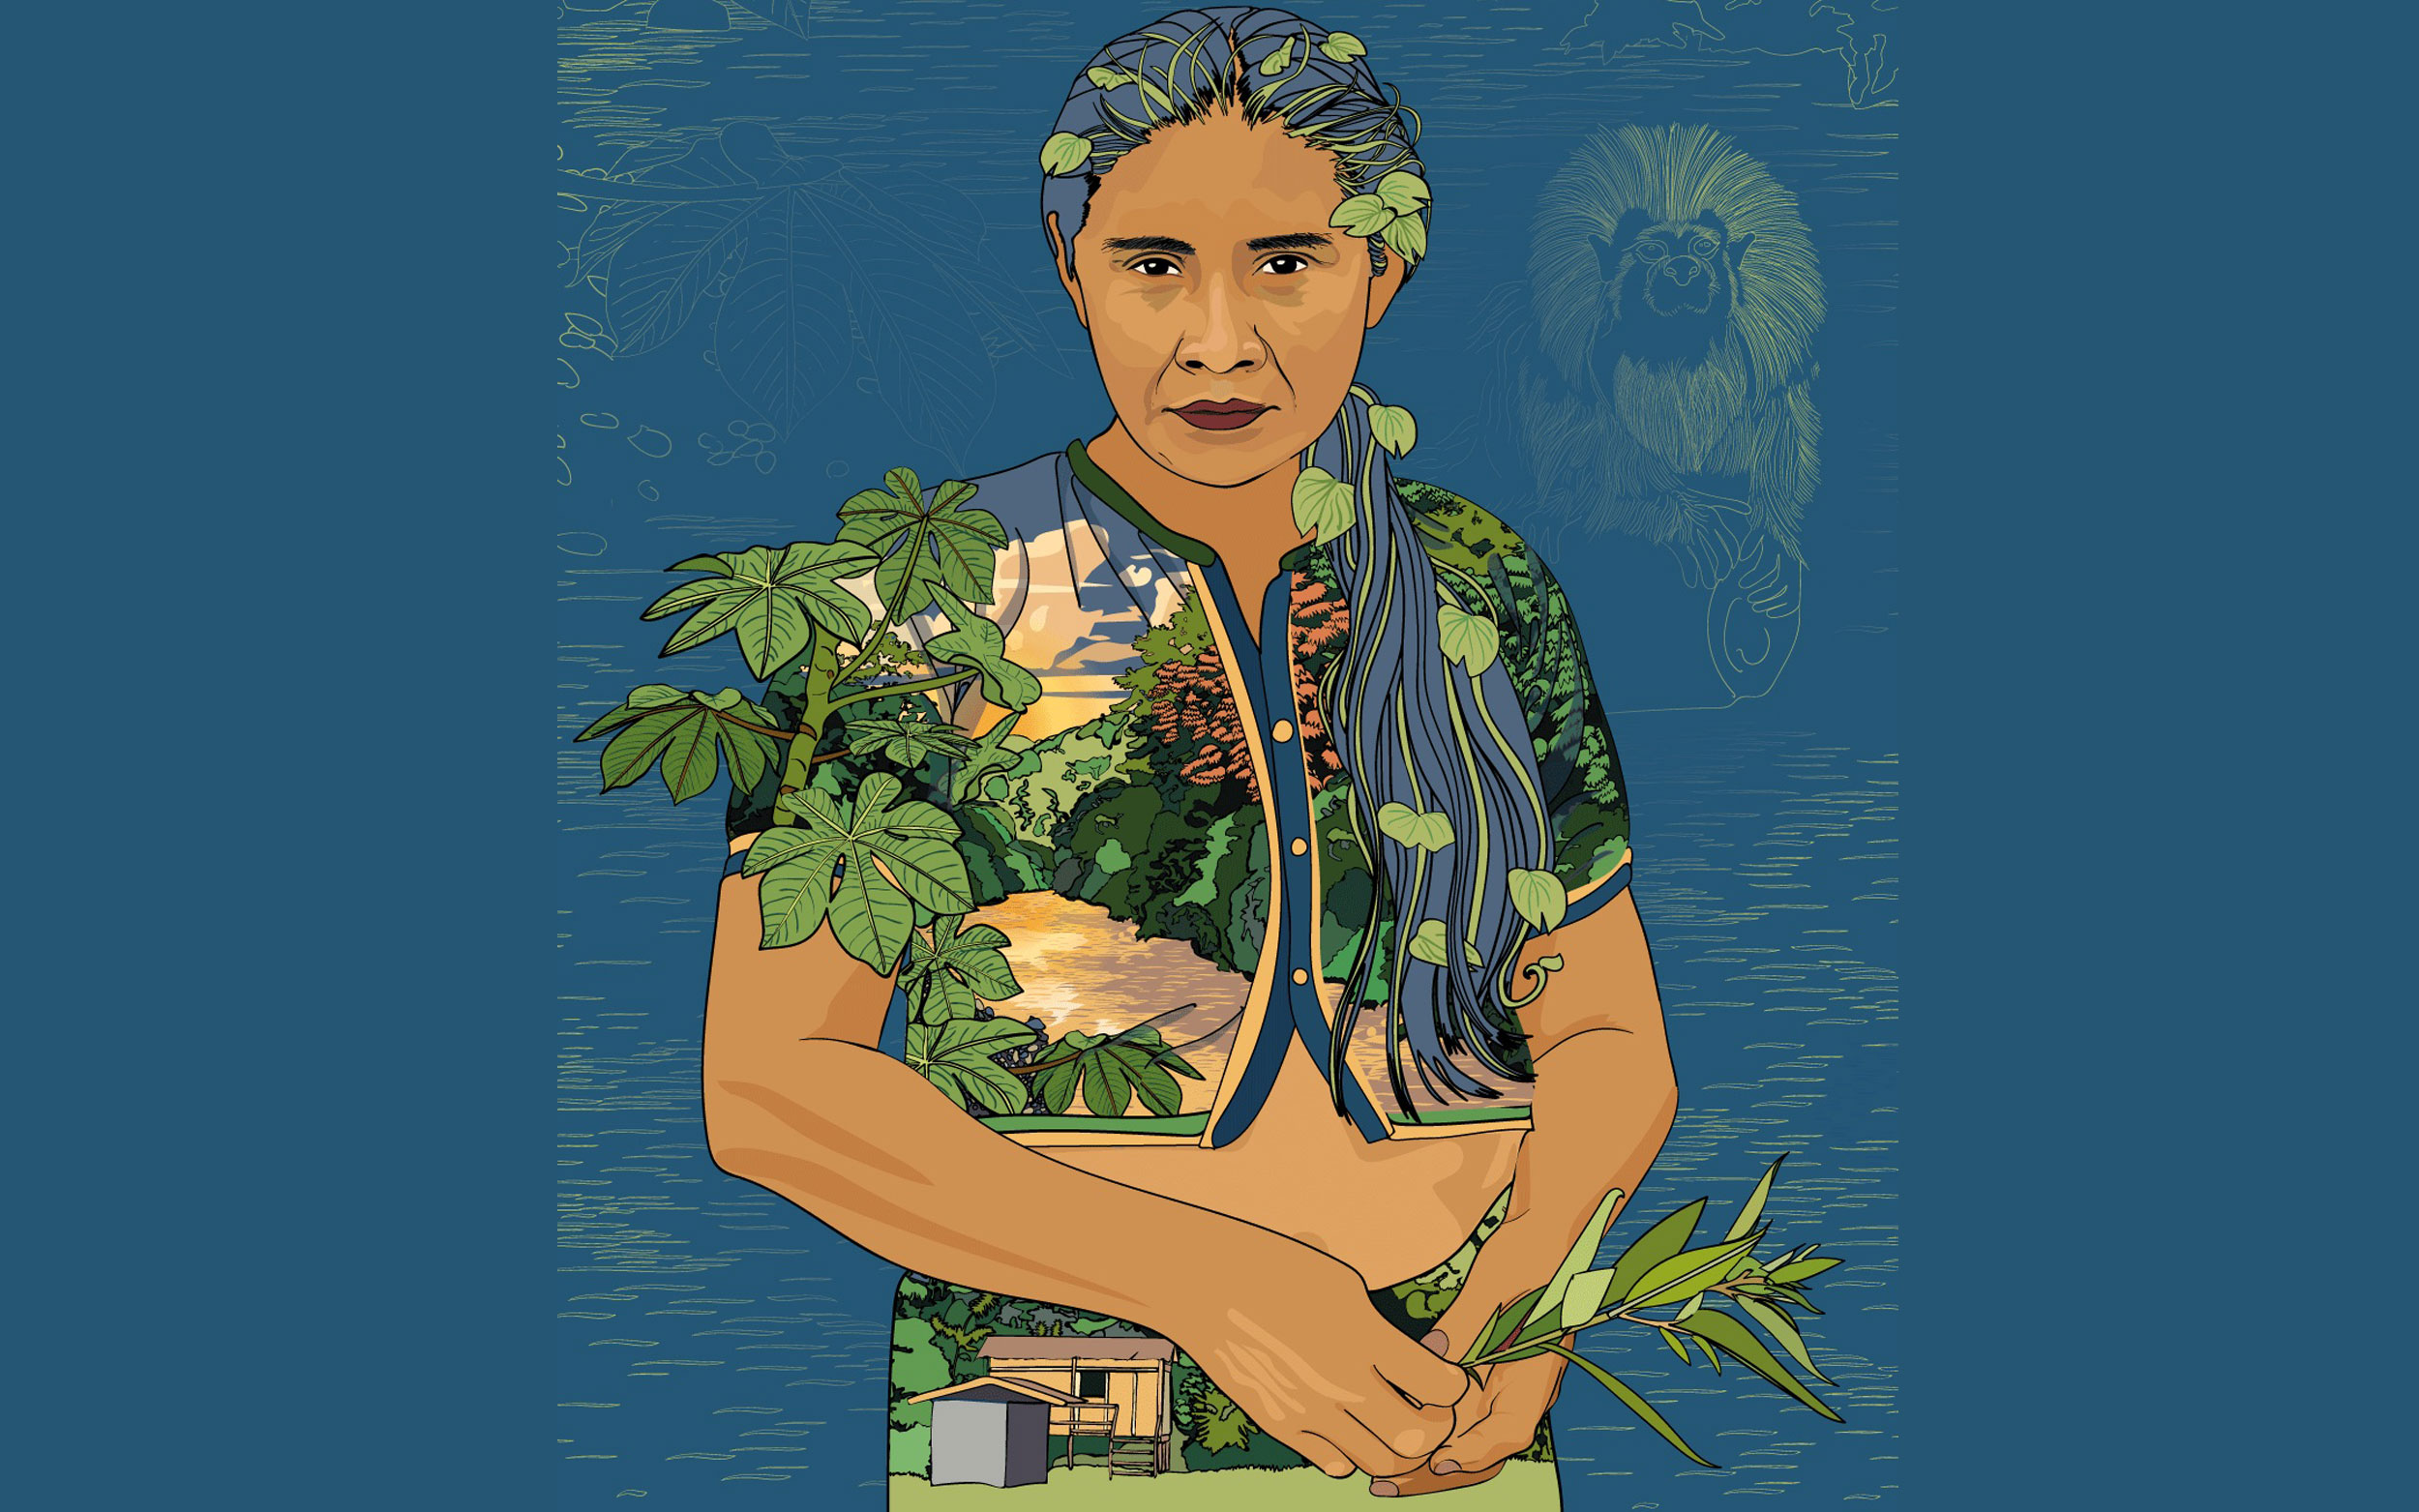 Retrato ilustrado de María rodeada de plantas, mirada profunda, pelo recogido. Vestido de dos piezas con paisaje selvático estampado